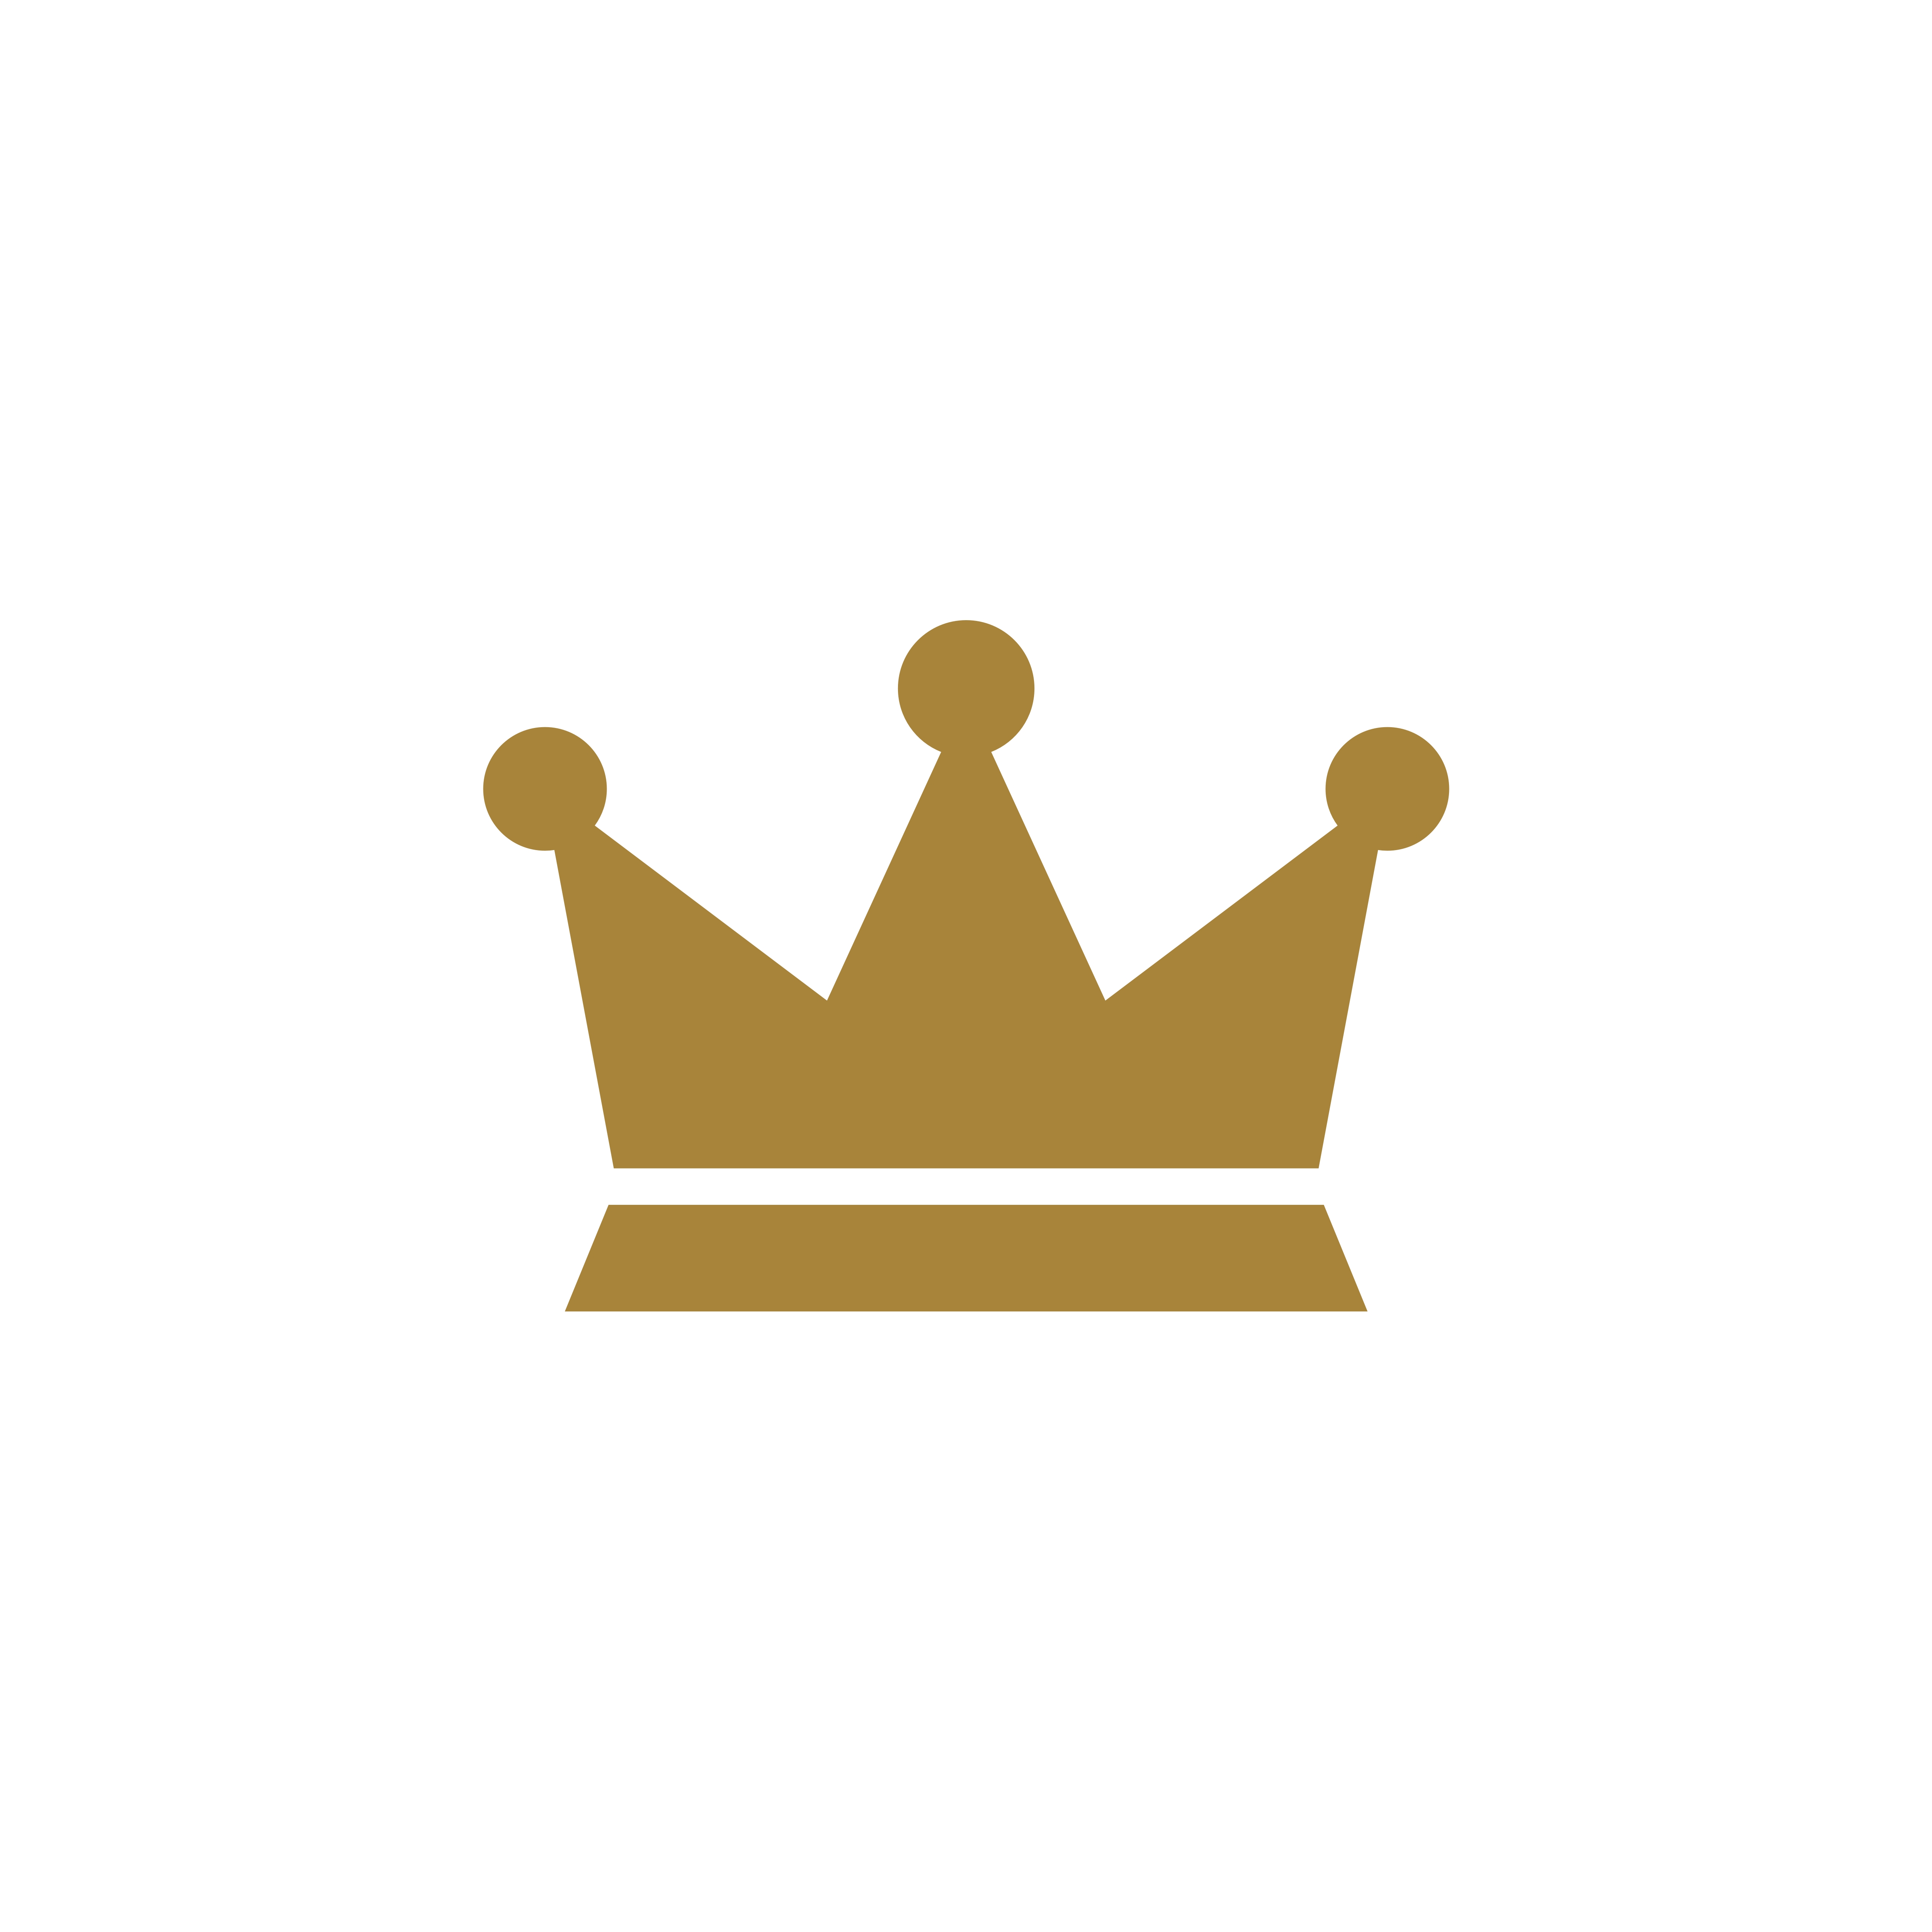 Download Gold Crown Logo Template Illustration Design. Vector EPS ...